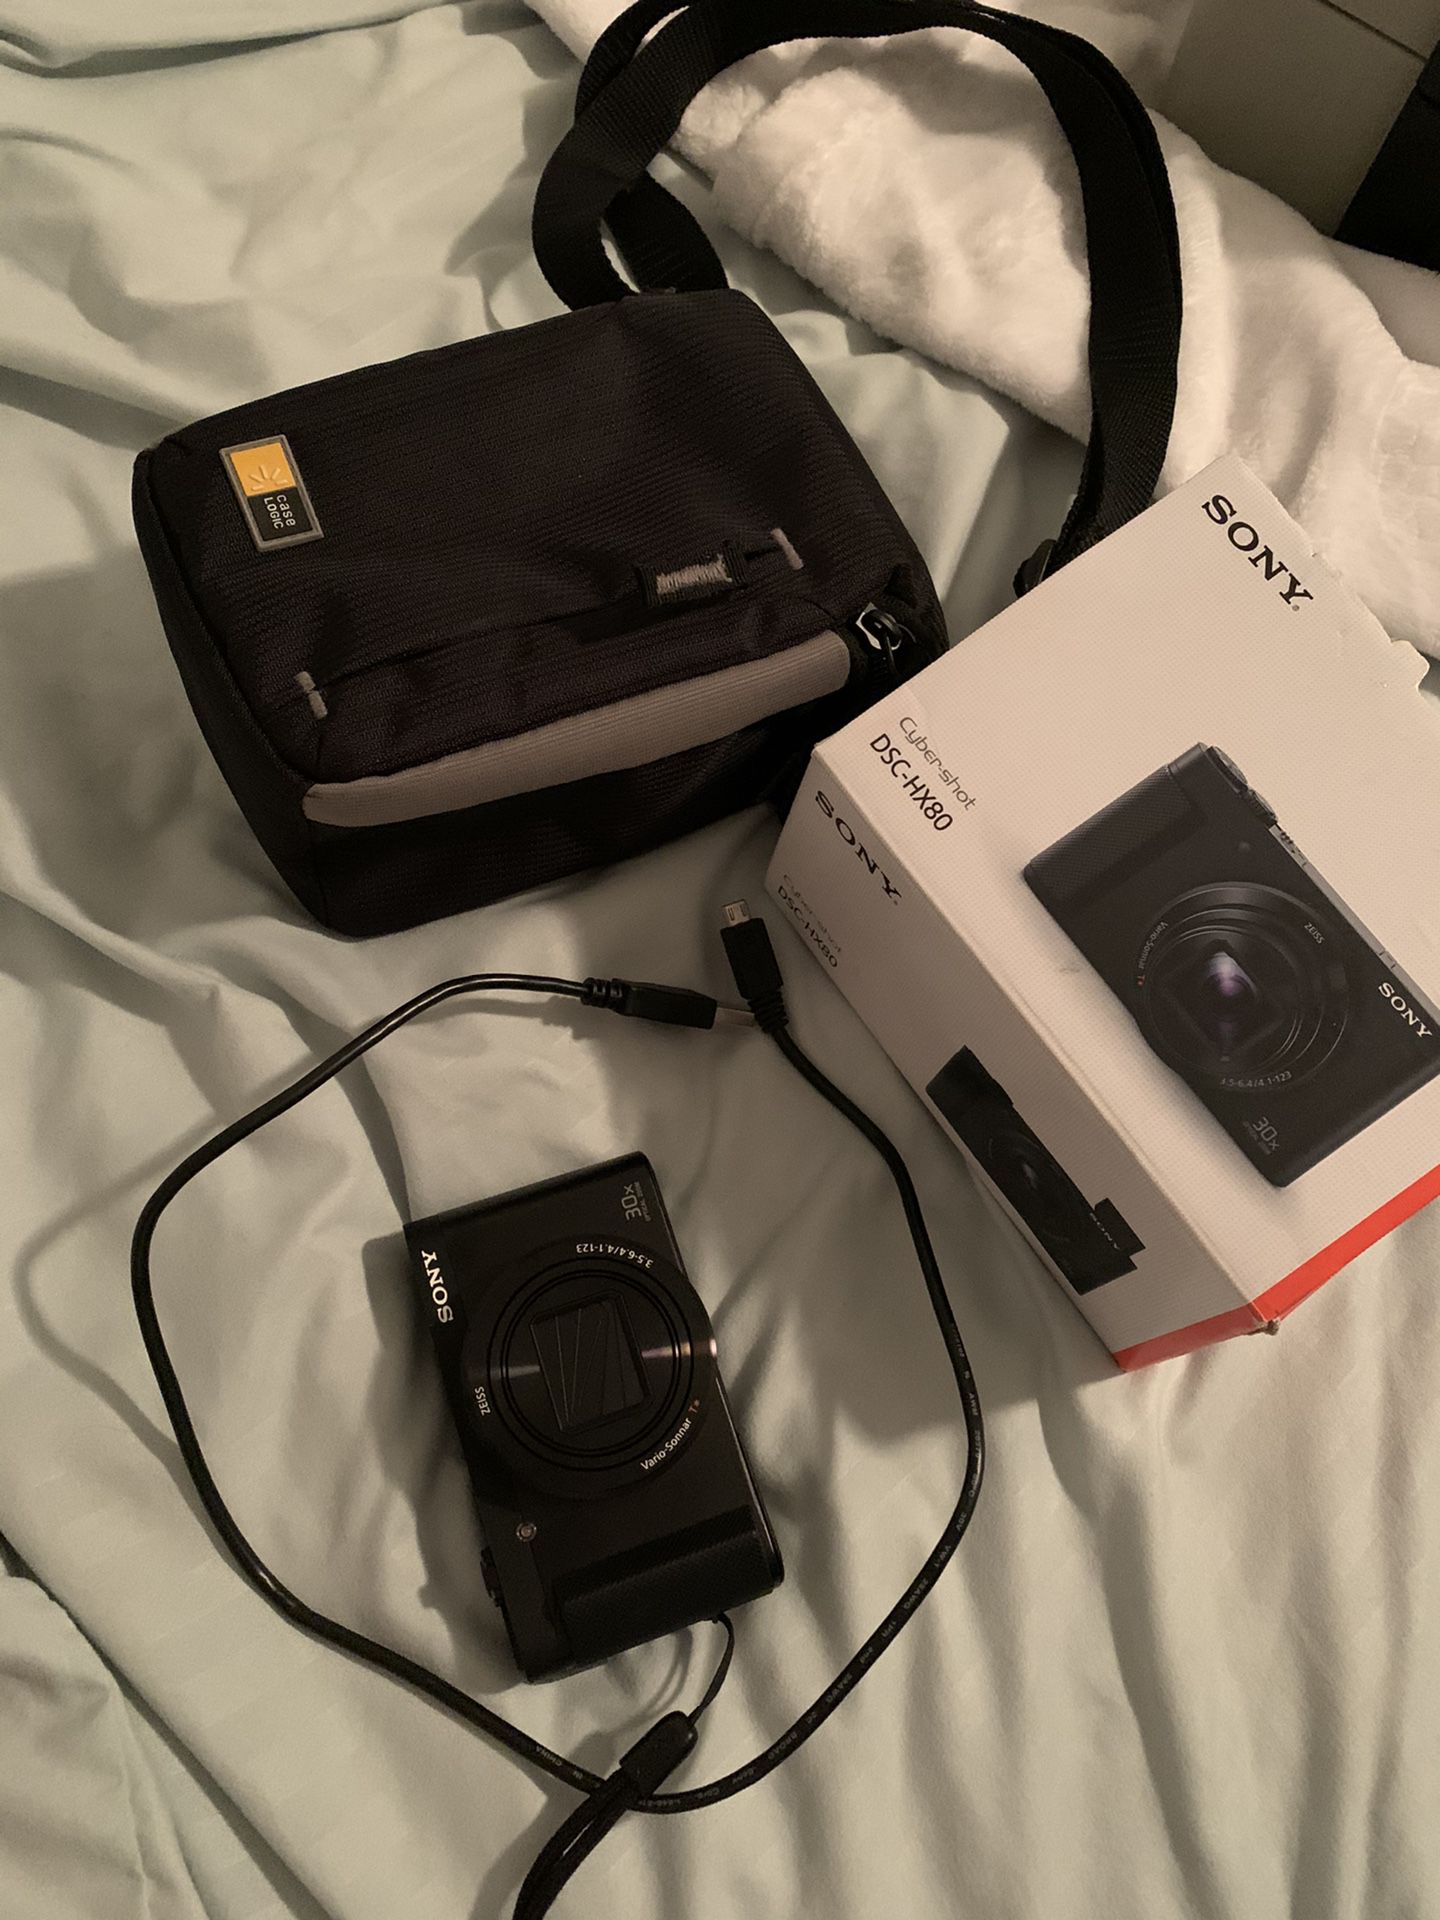 Sony DSC-HX80 Camera / case included